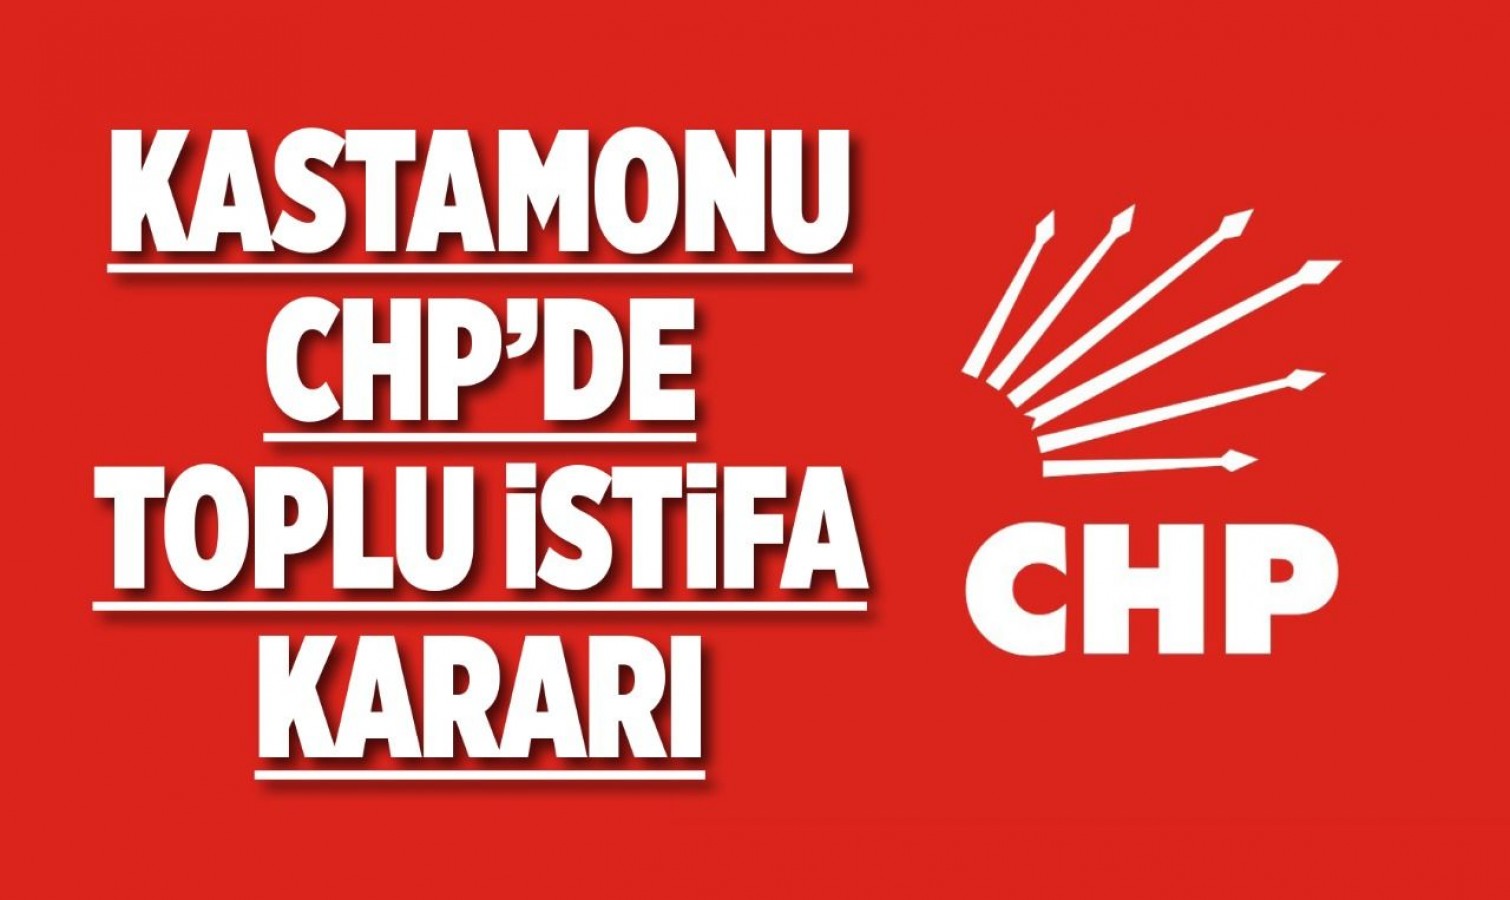 Kastamonu CHP’de toplu istifa kararı!..;